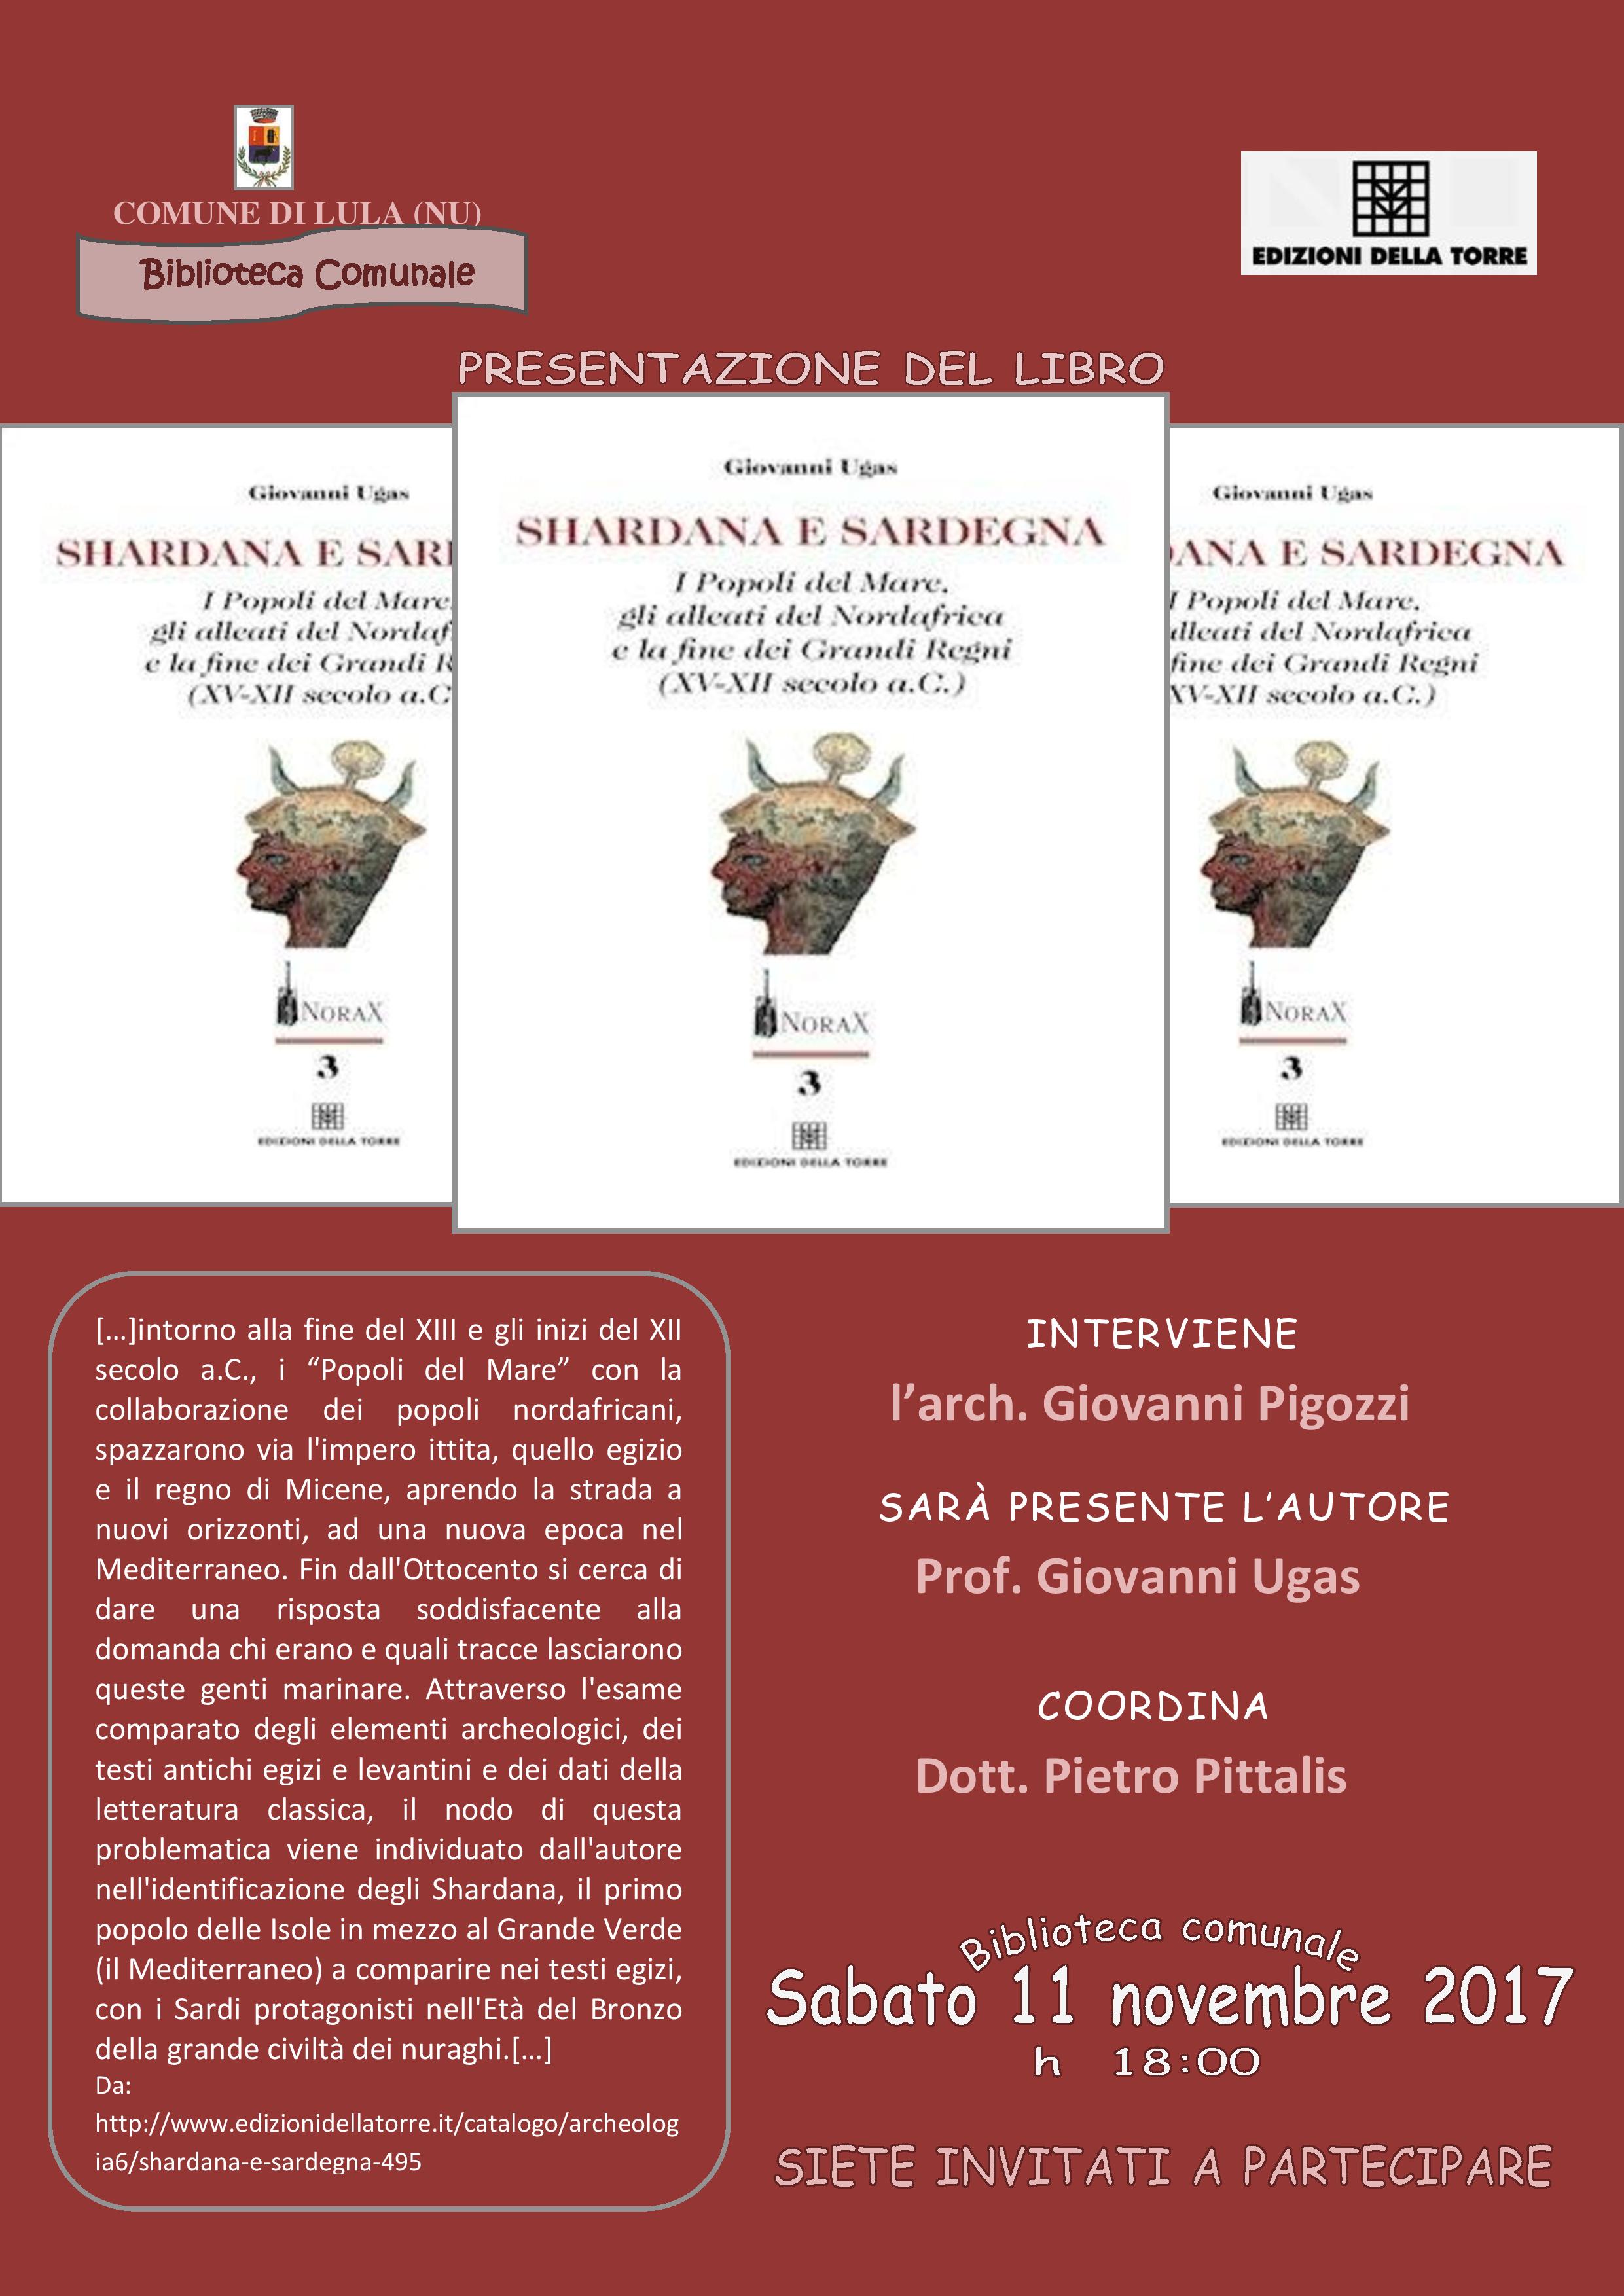 Presentazione del libro 'Shardana e Sardegna' di Giovanni Ugas